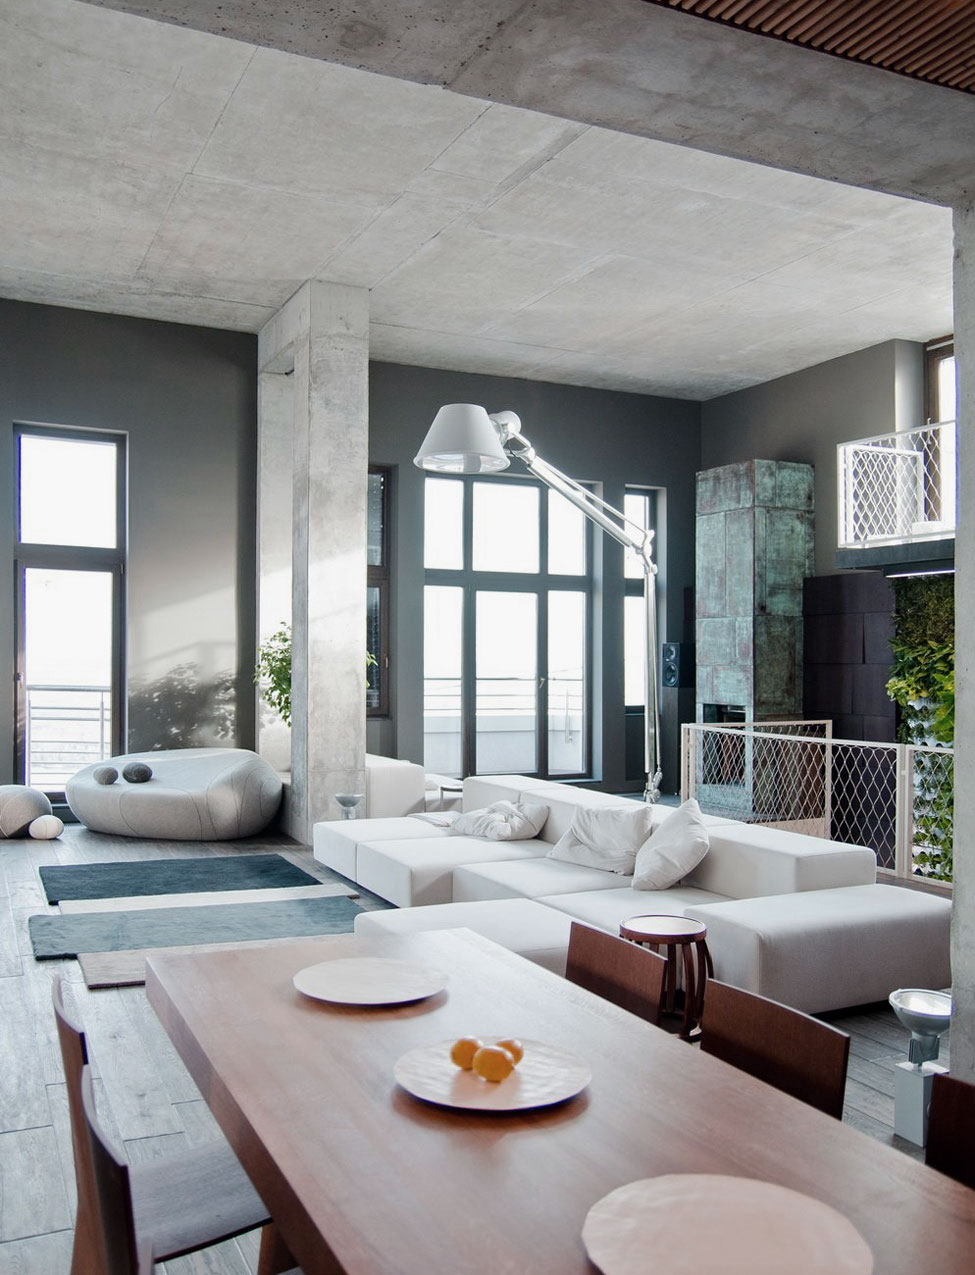 Open Plan Living Dining Room Ideas - Interior Design Ideas